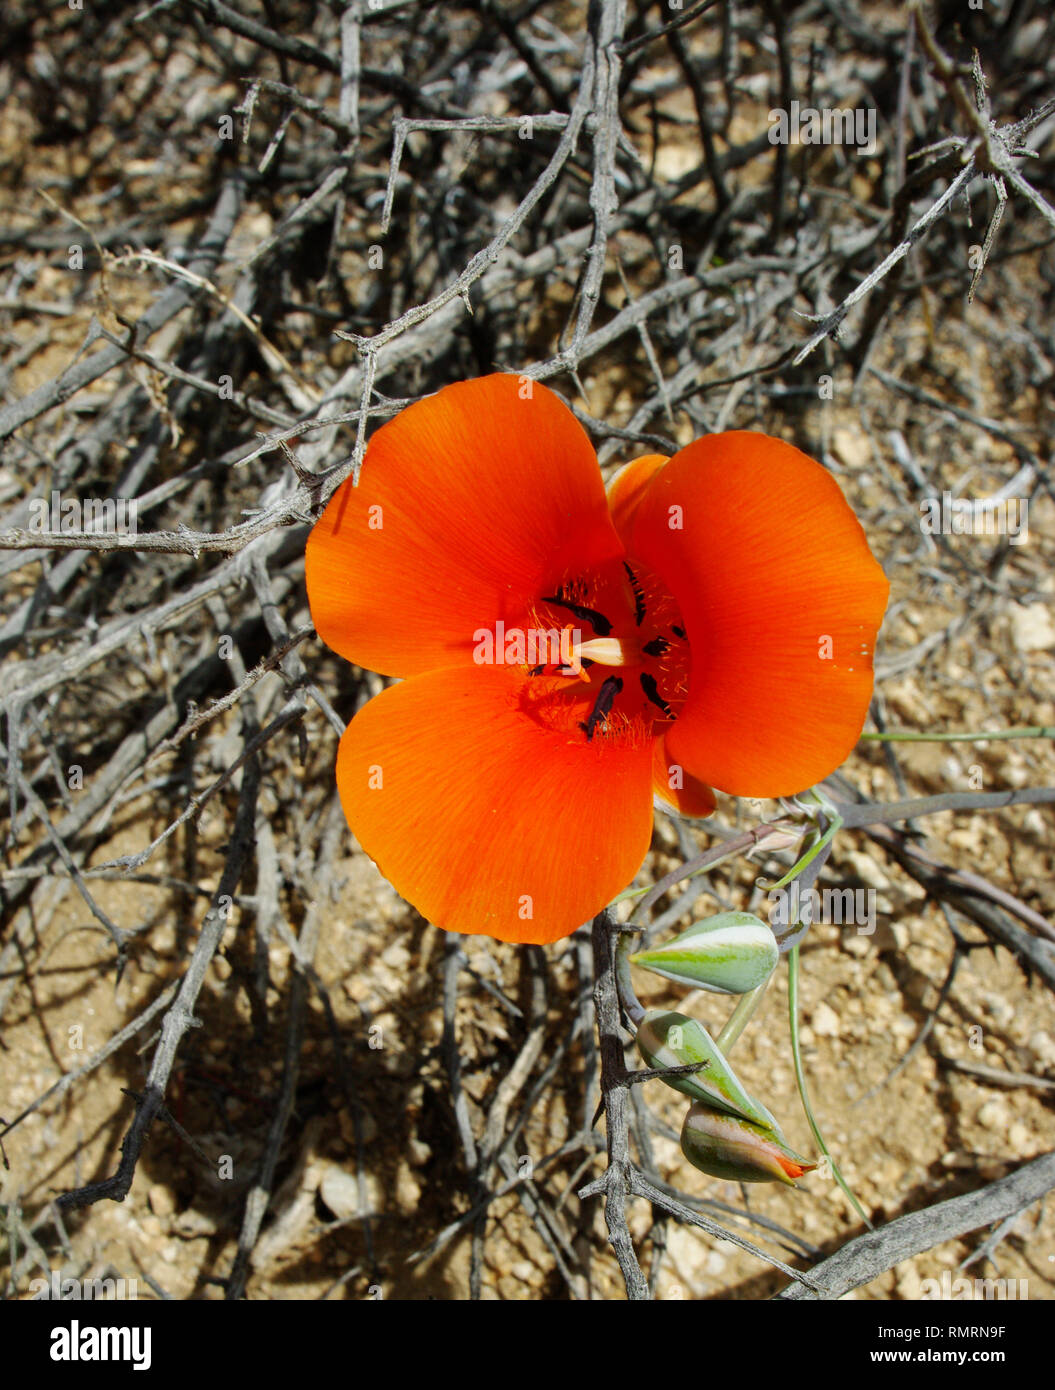 A rare desert mariposa lily in the California desert in bright orange. Mojave joshua tree area Stock Photo